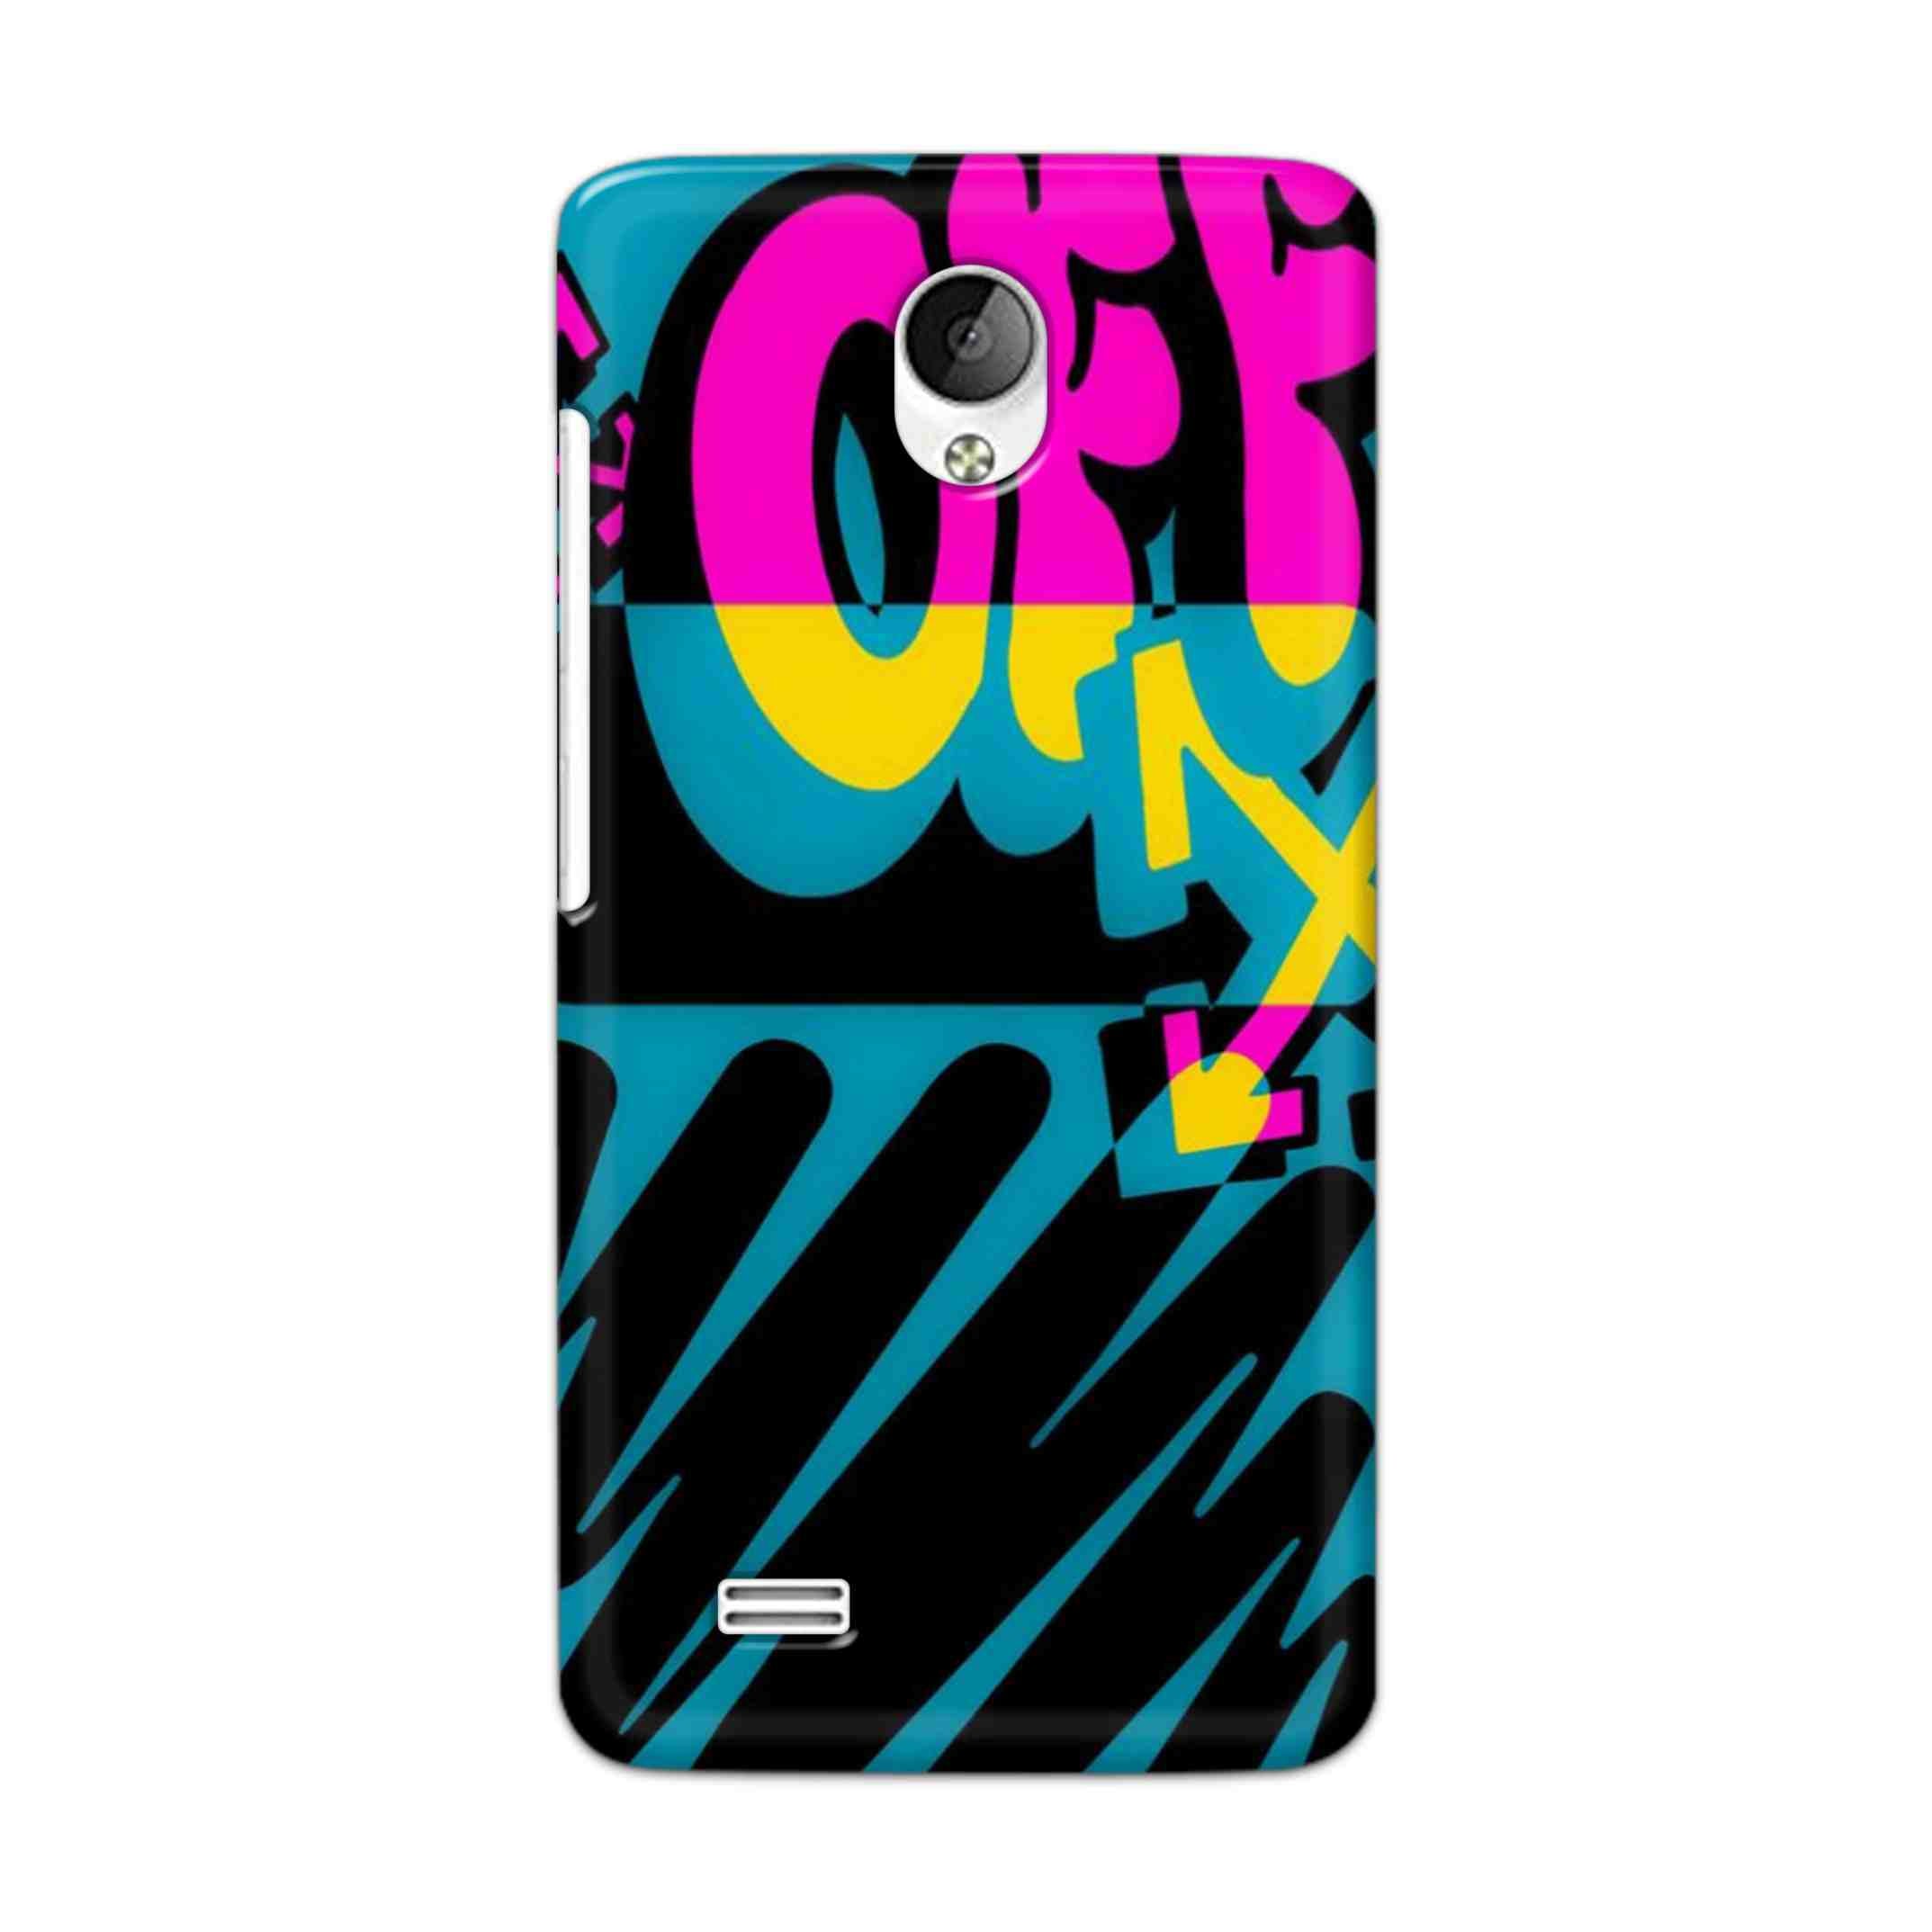 Buy Off Hard Back Mobile Phone Case Cover For Vivo Y21 / Vivo Y21L Online